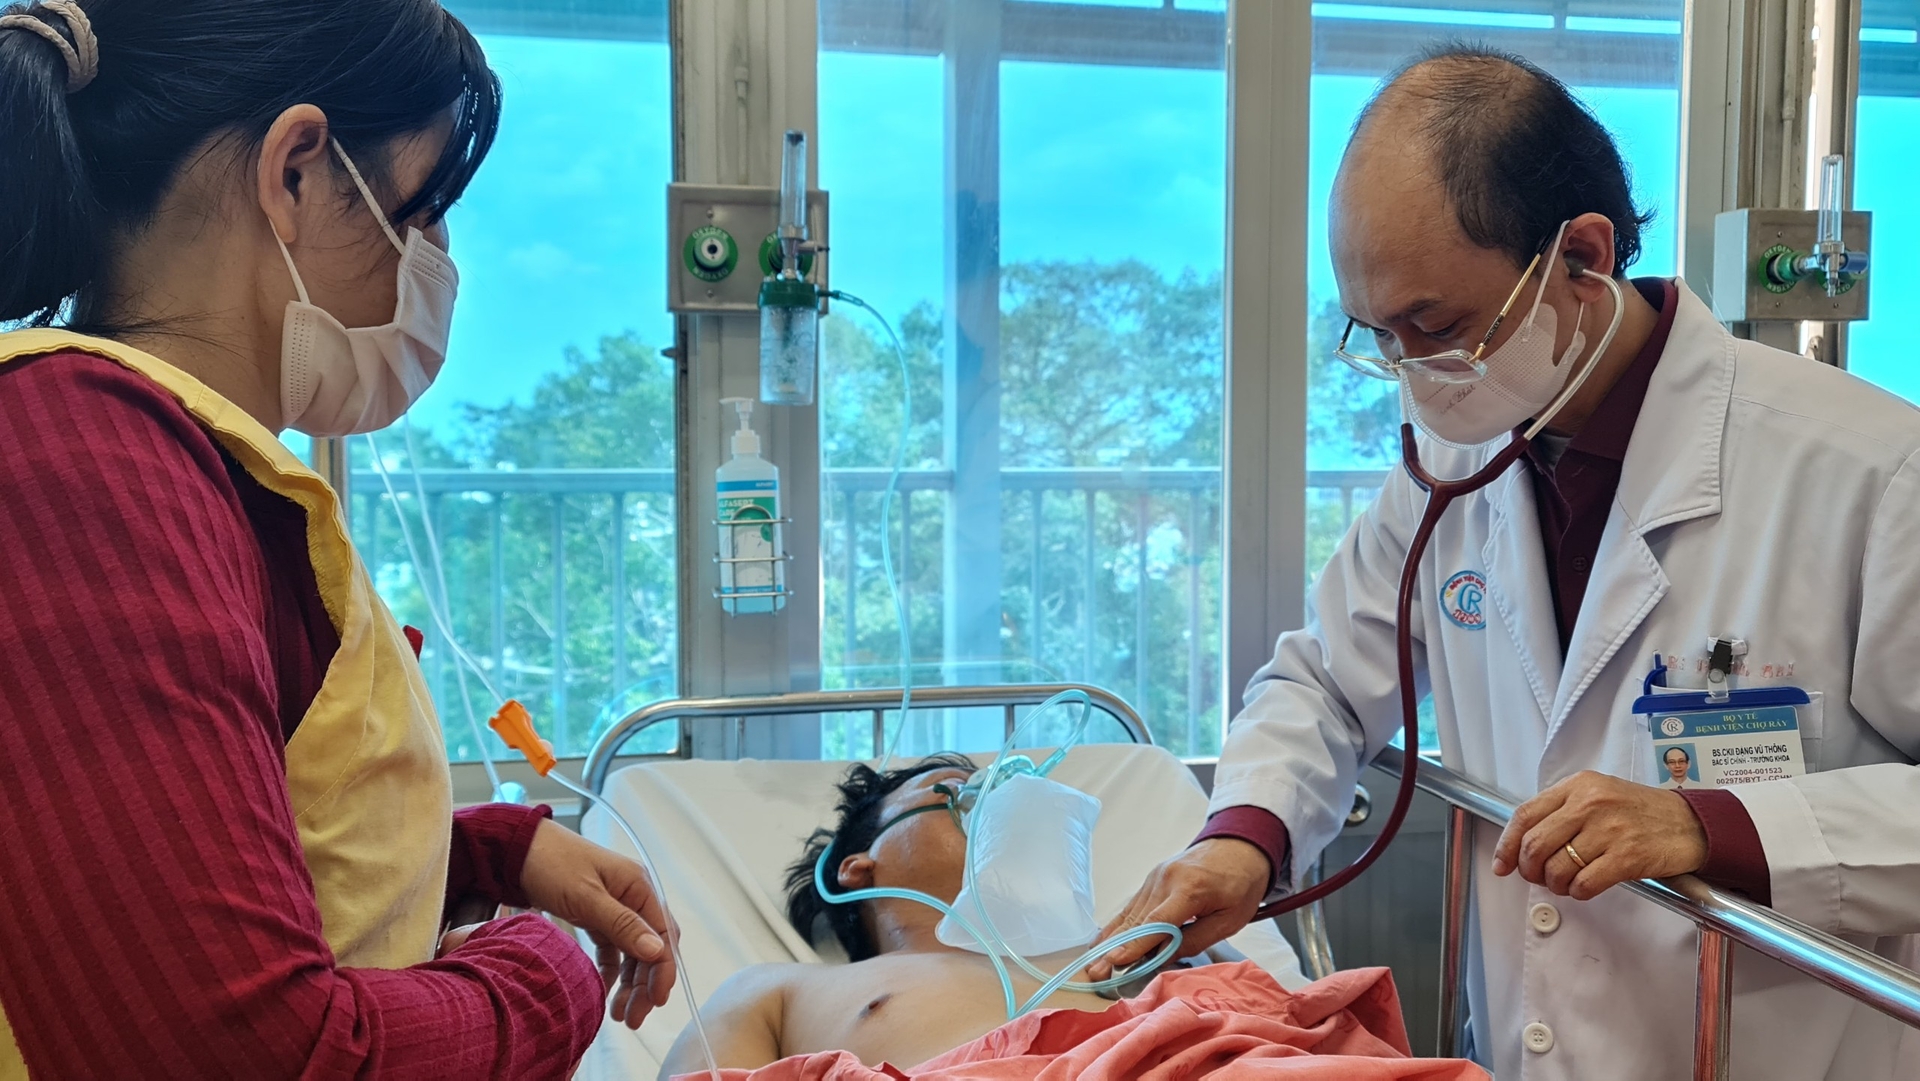 Bác sĩ chuyên khoa 2 Đặng Vũ Thông, Trưởng khoa Nội phổi Bệnh viện Chợ Rẫy thăm khám cho bệnh nhân bị ngộ độc khí ga. Ảnh: Bệnh viện cung cấp.